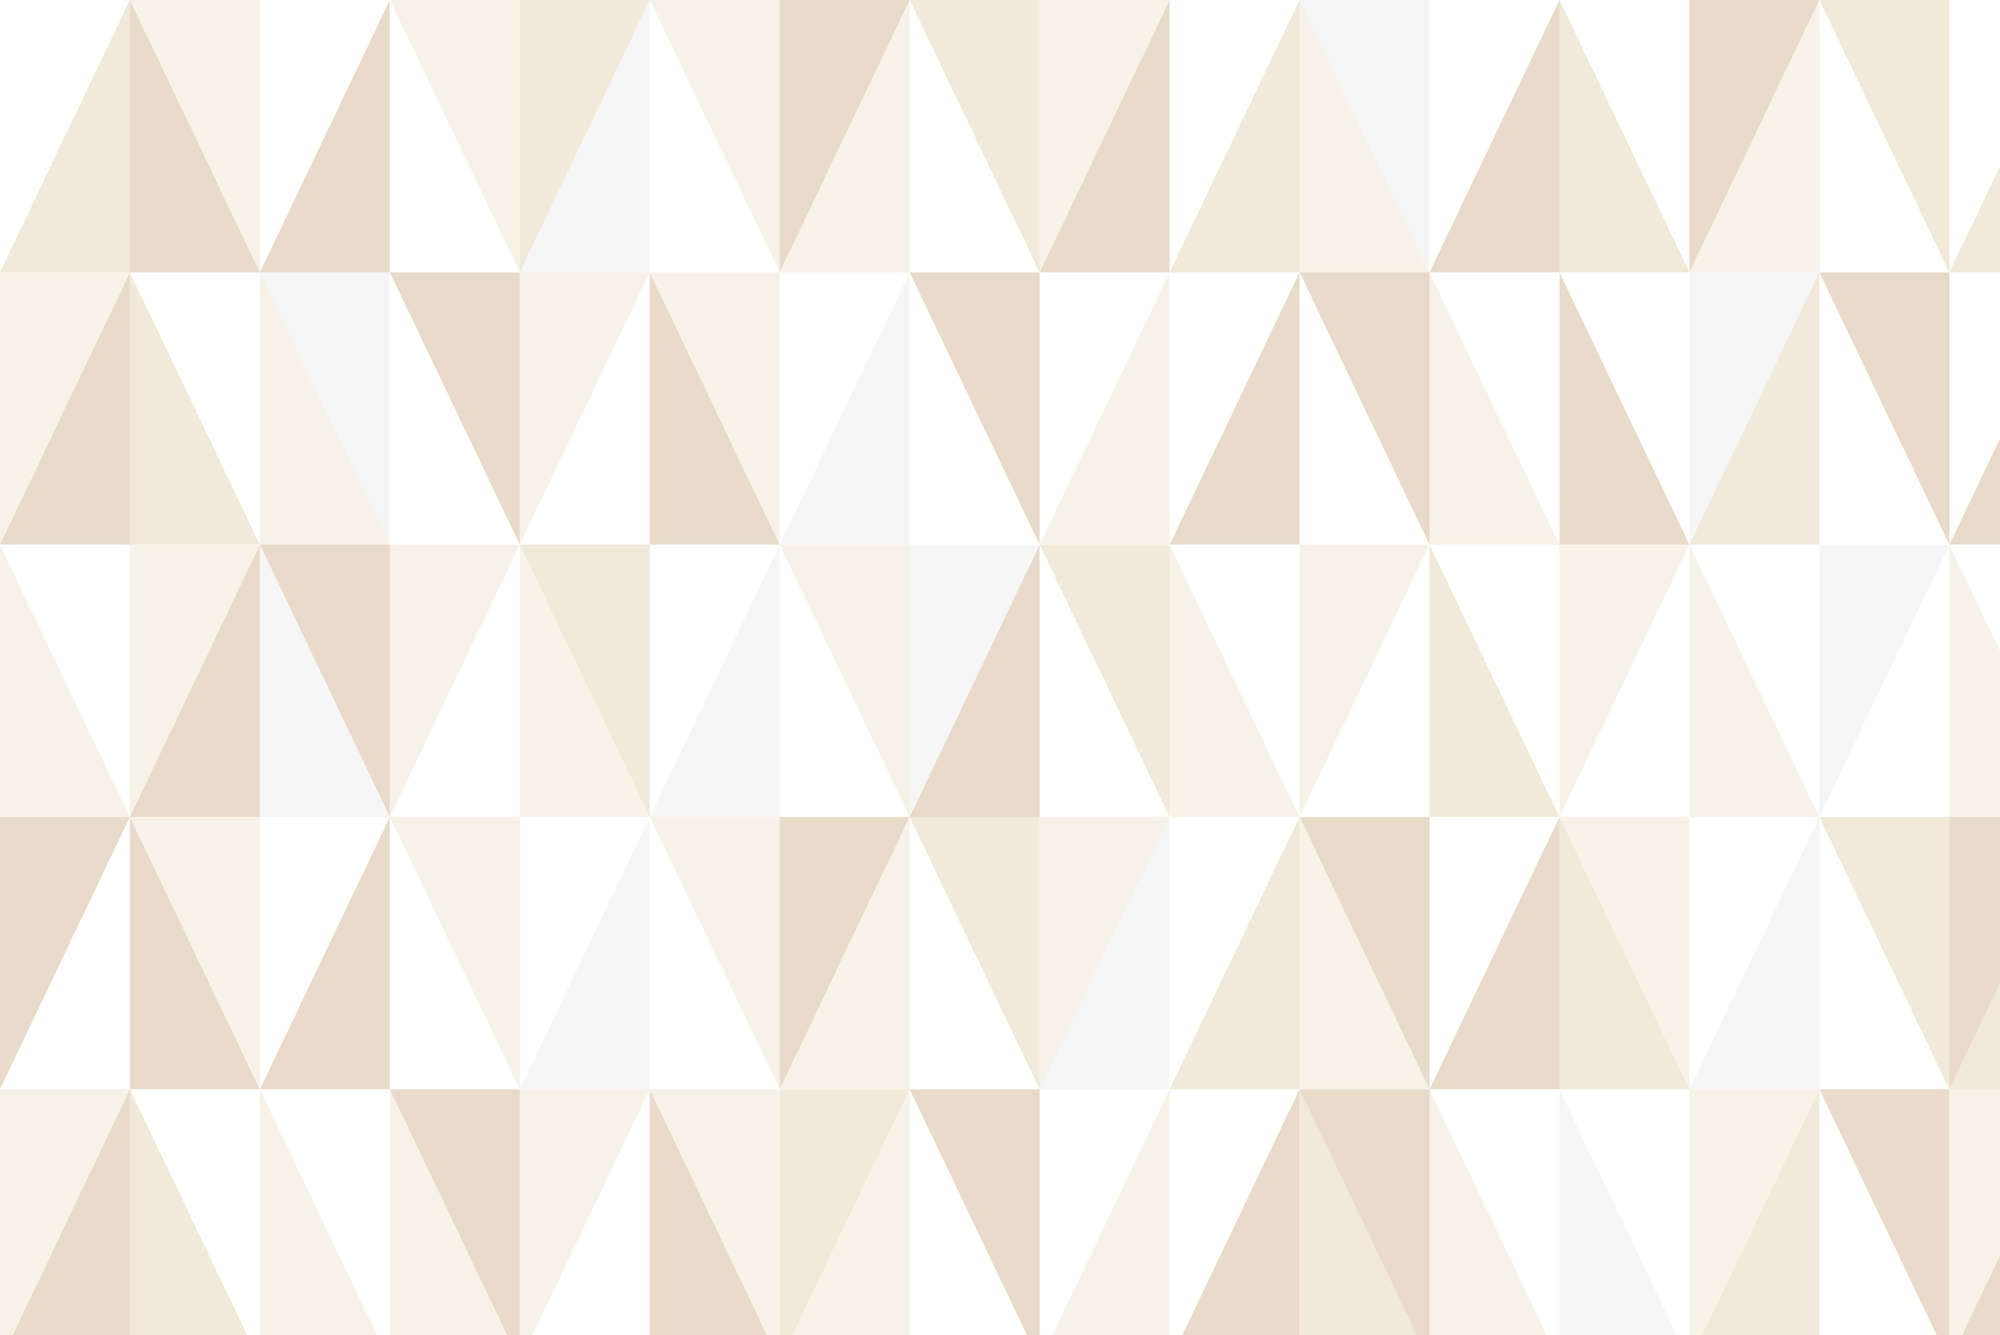             Papier peint design avec petits triangles beige sur intissé structuré
        